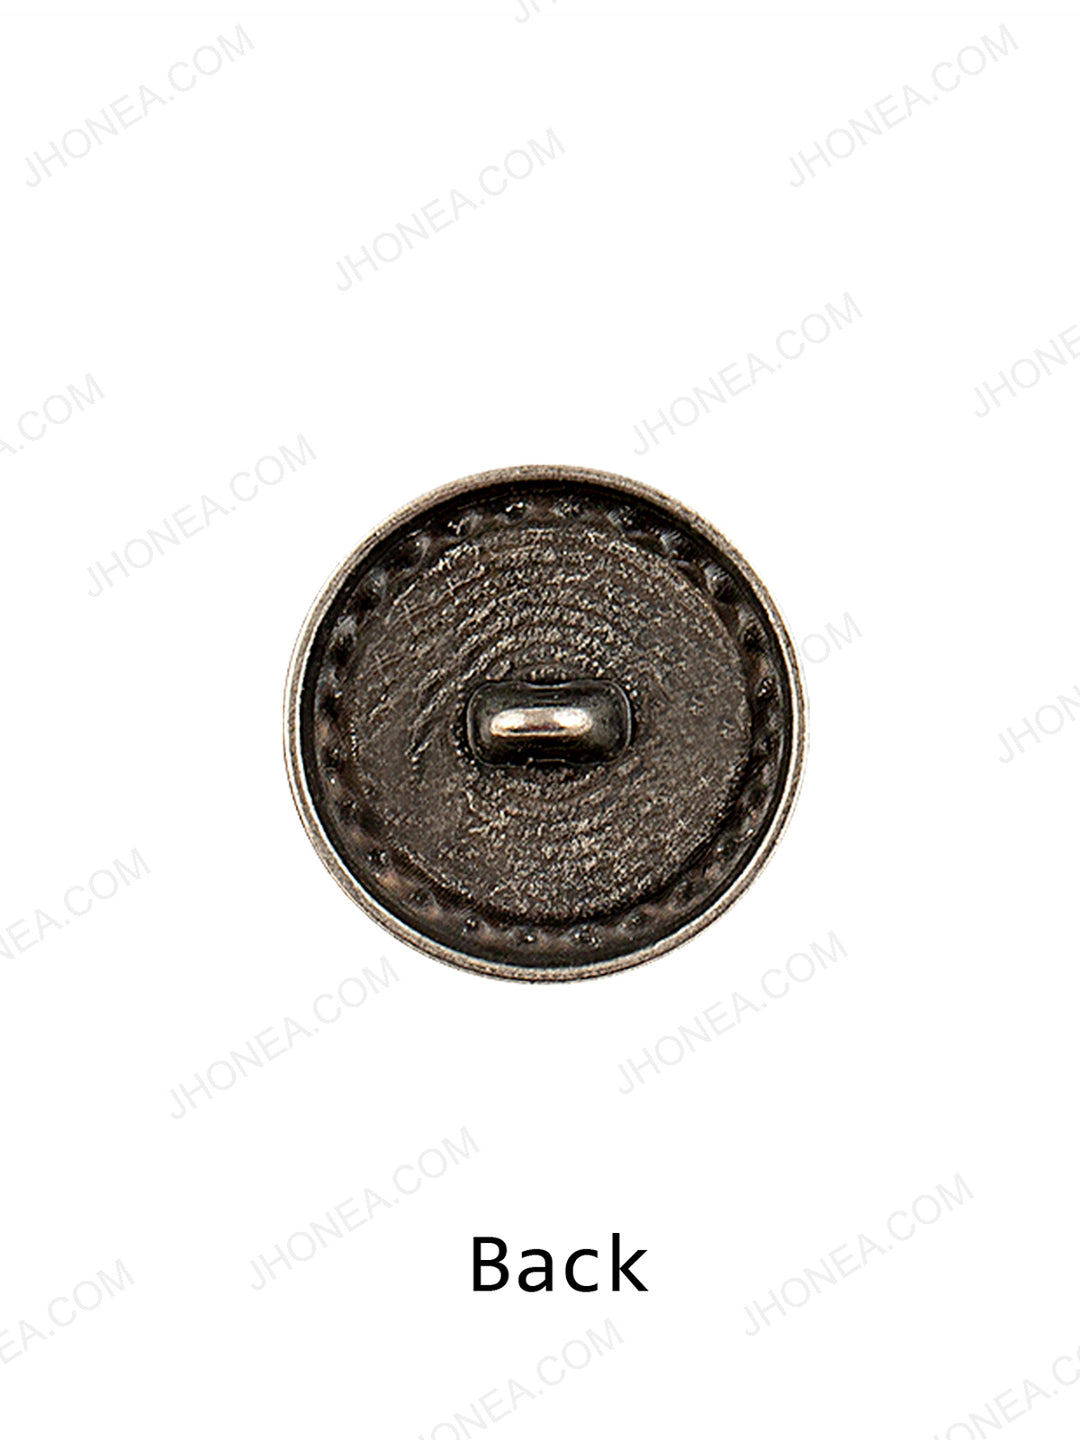 Regal Design Antique Silver Coat Button